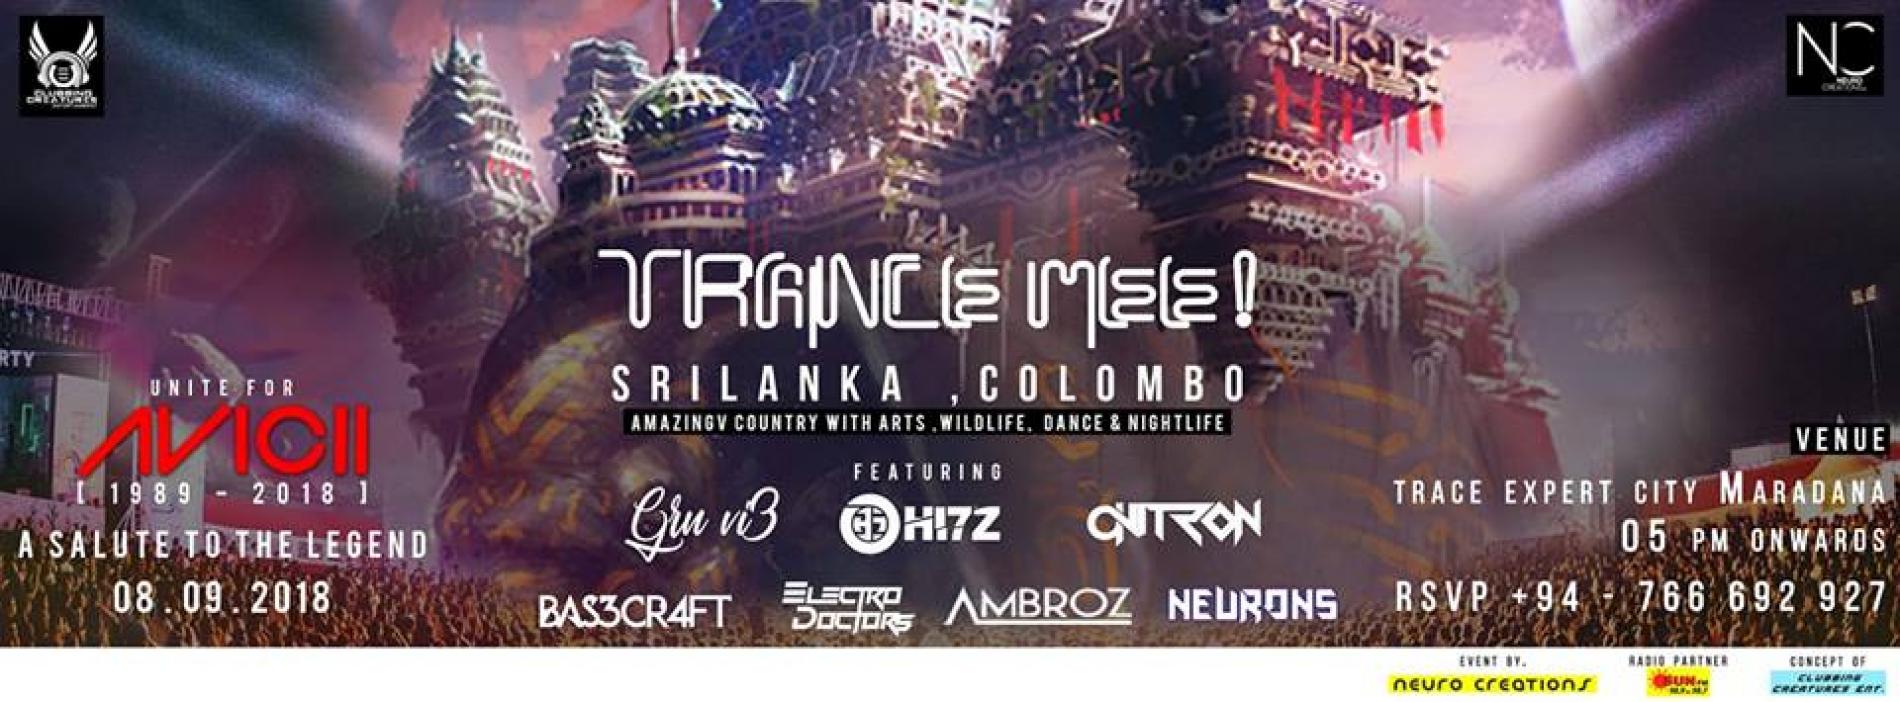 Trance Mee! Colombo, Srilanka